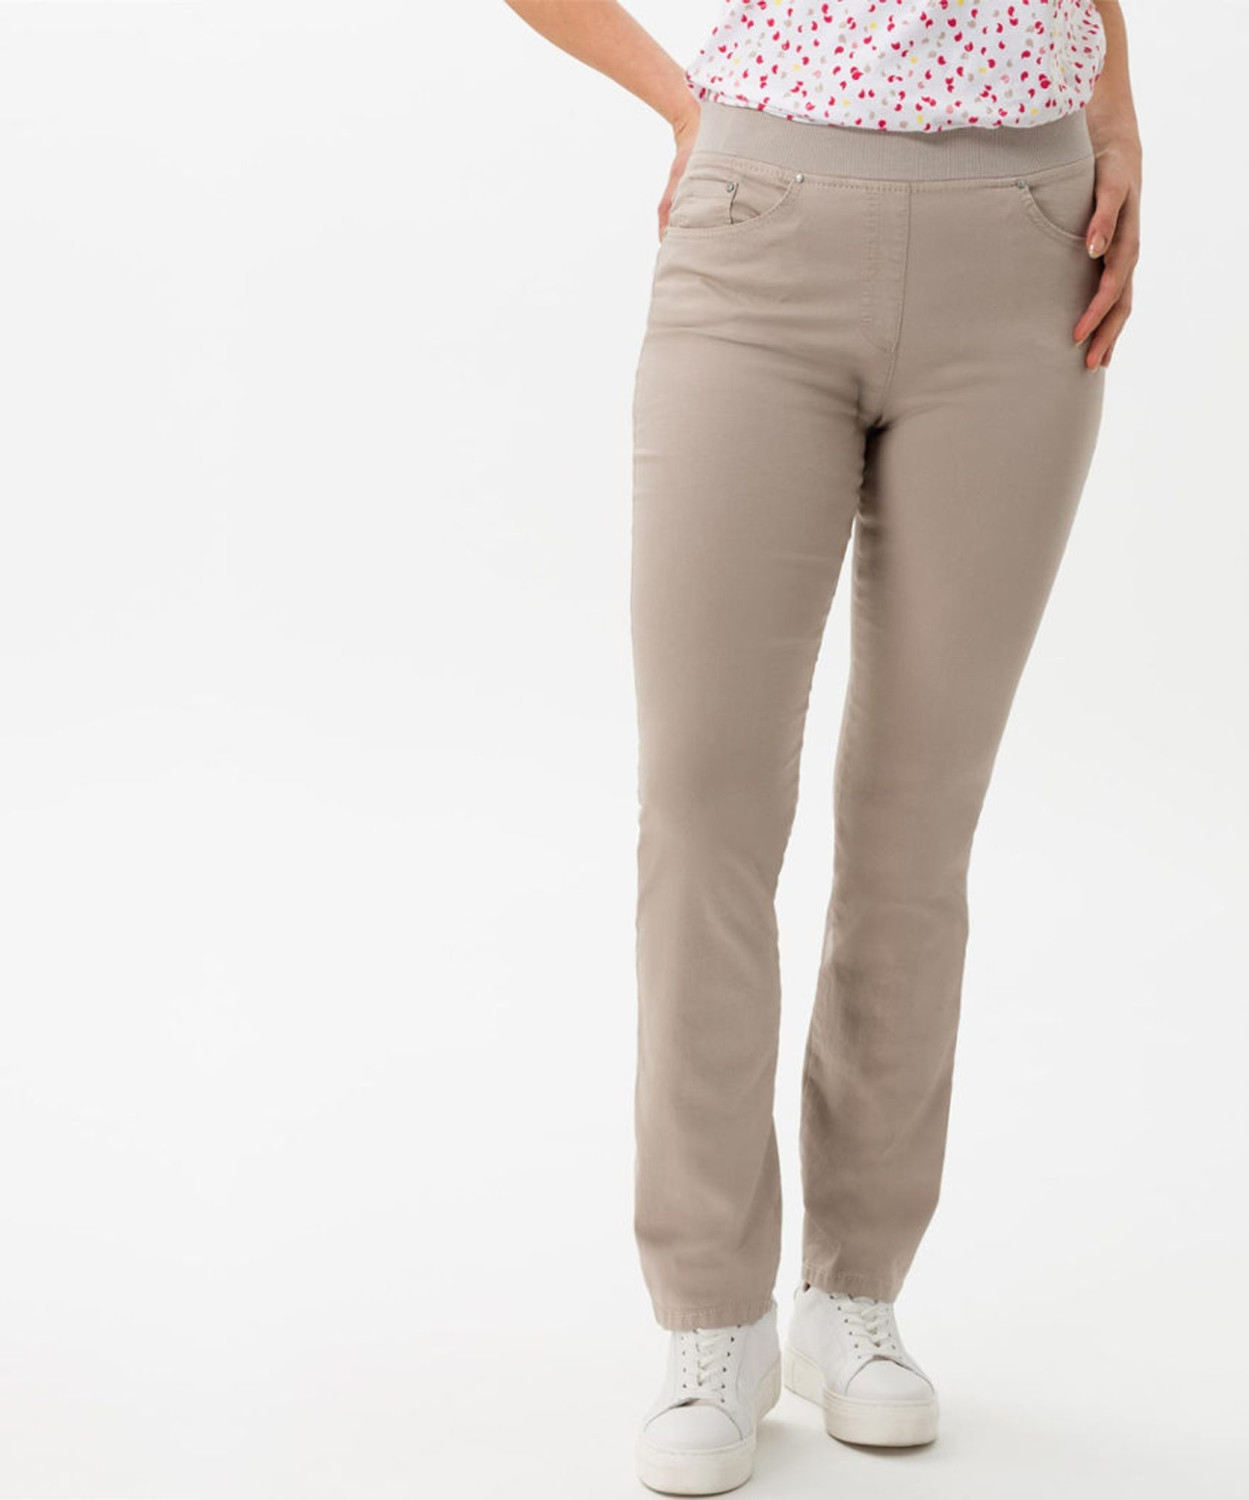 BRAX Raphaela Slim Pants Style Pamina (19-6227) light taupe ab 80,70 € |  Preisvergleich bei